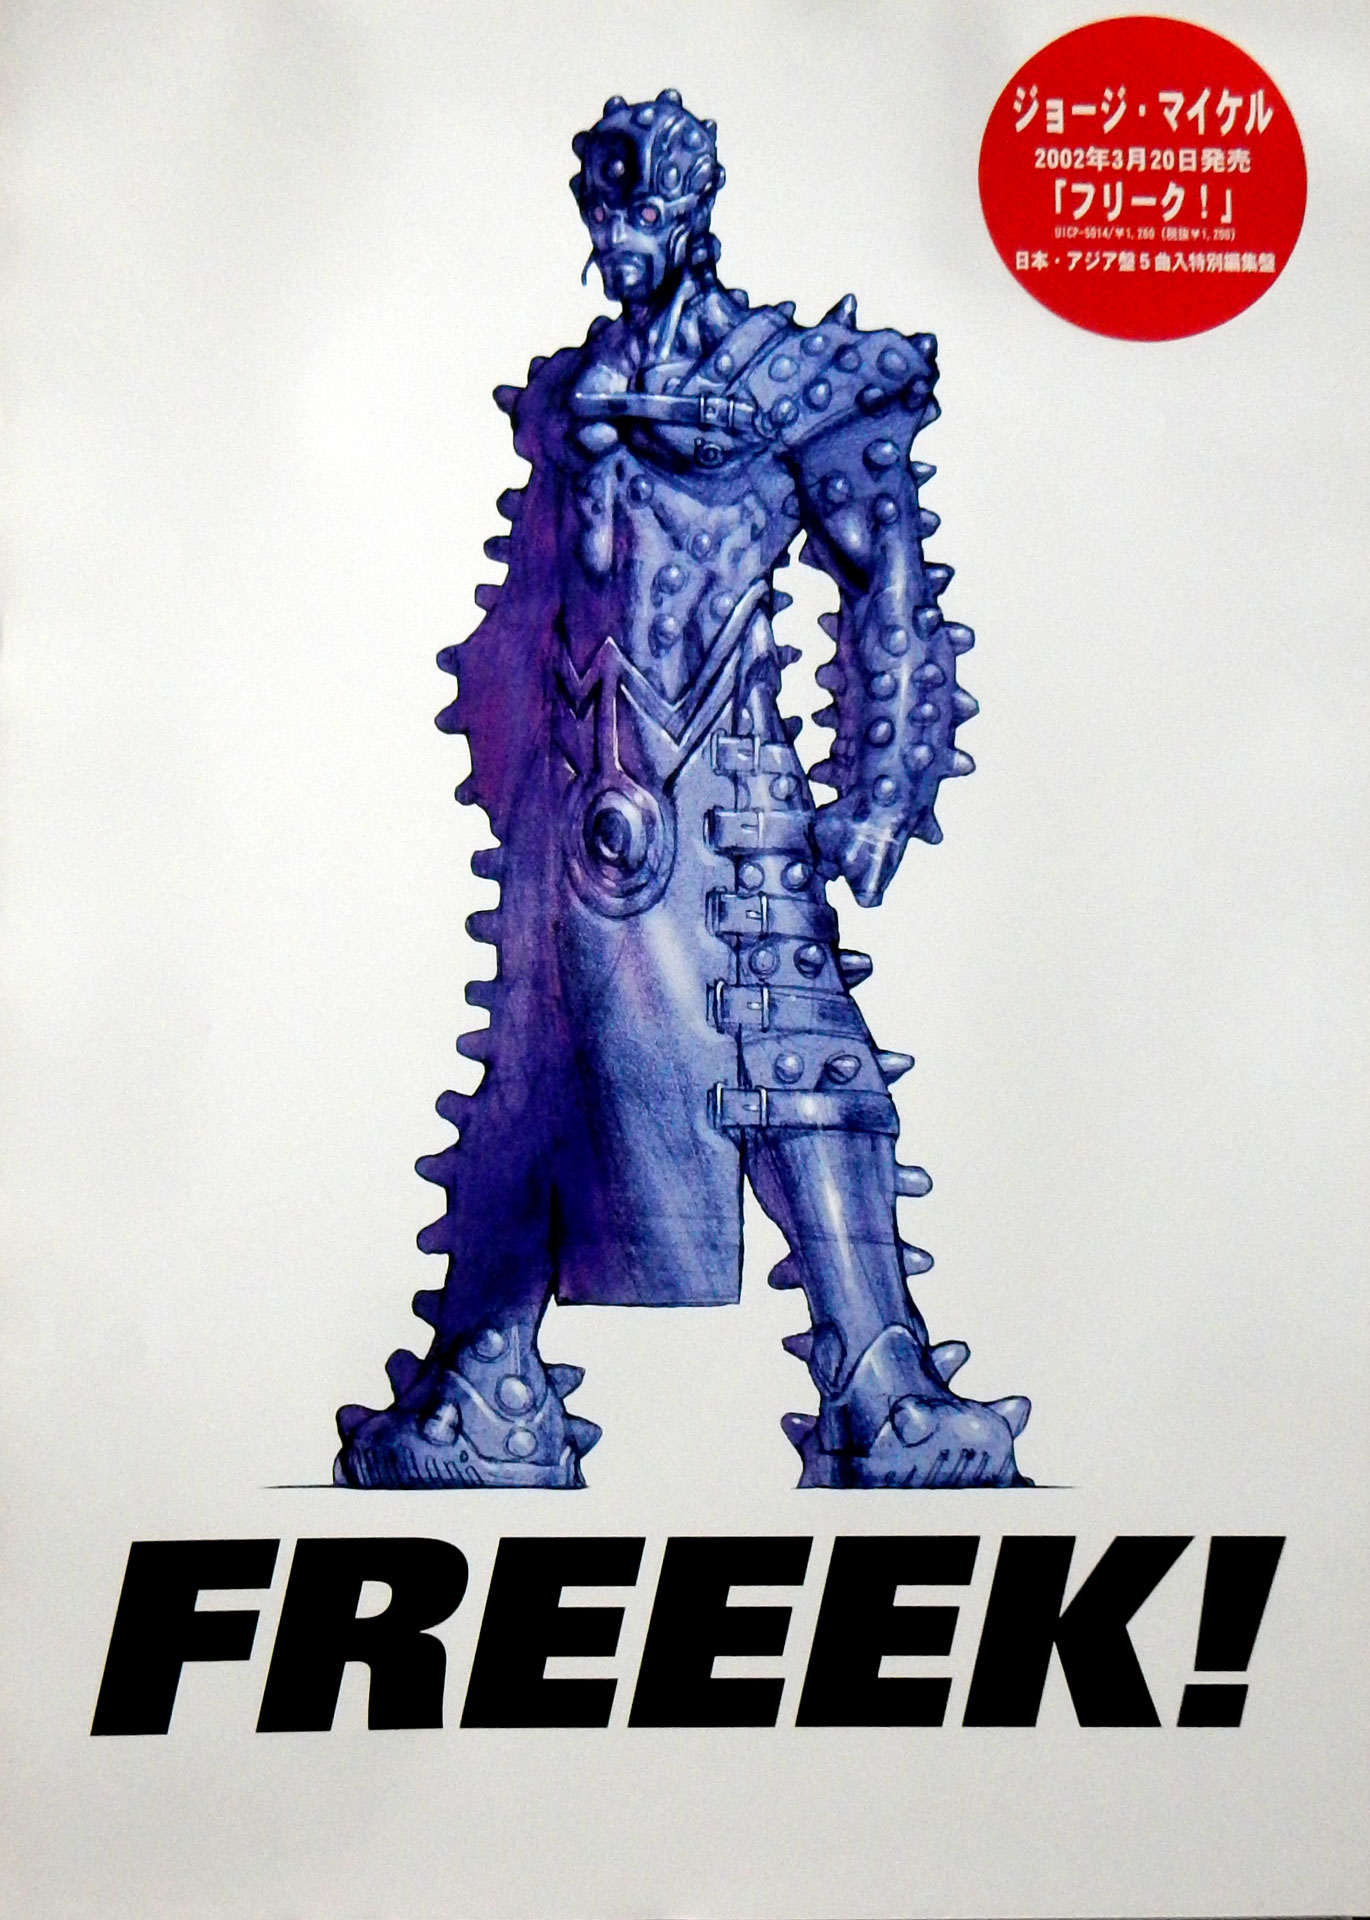 ジョージ・マイケル 「フリーク!」のポスター